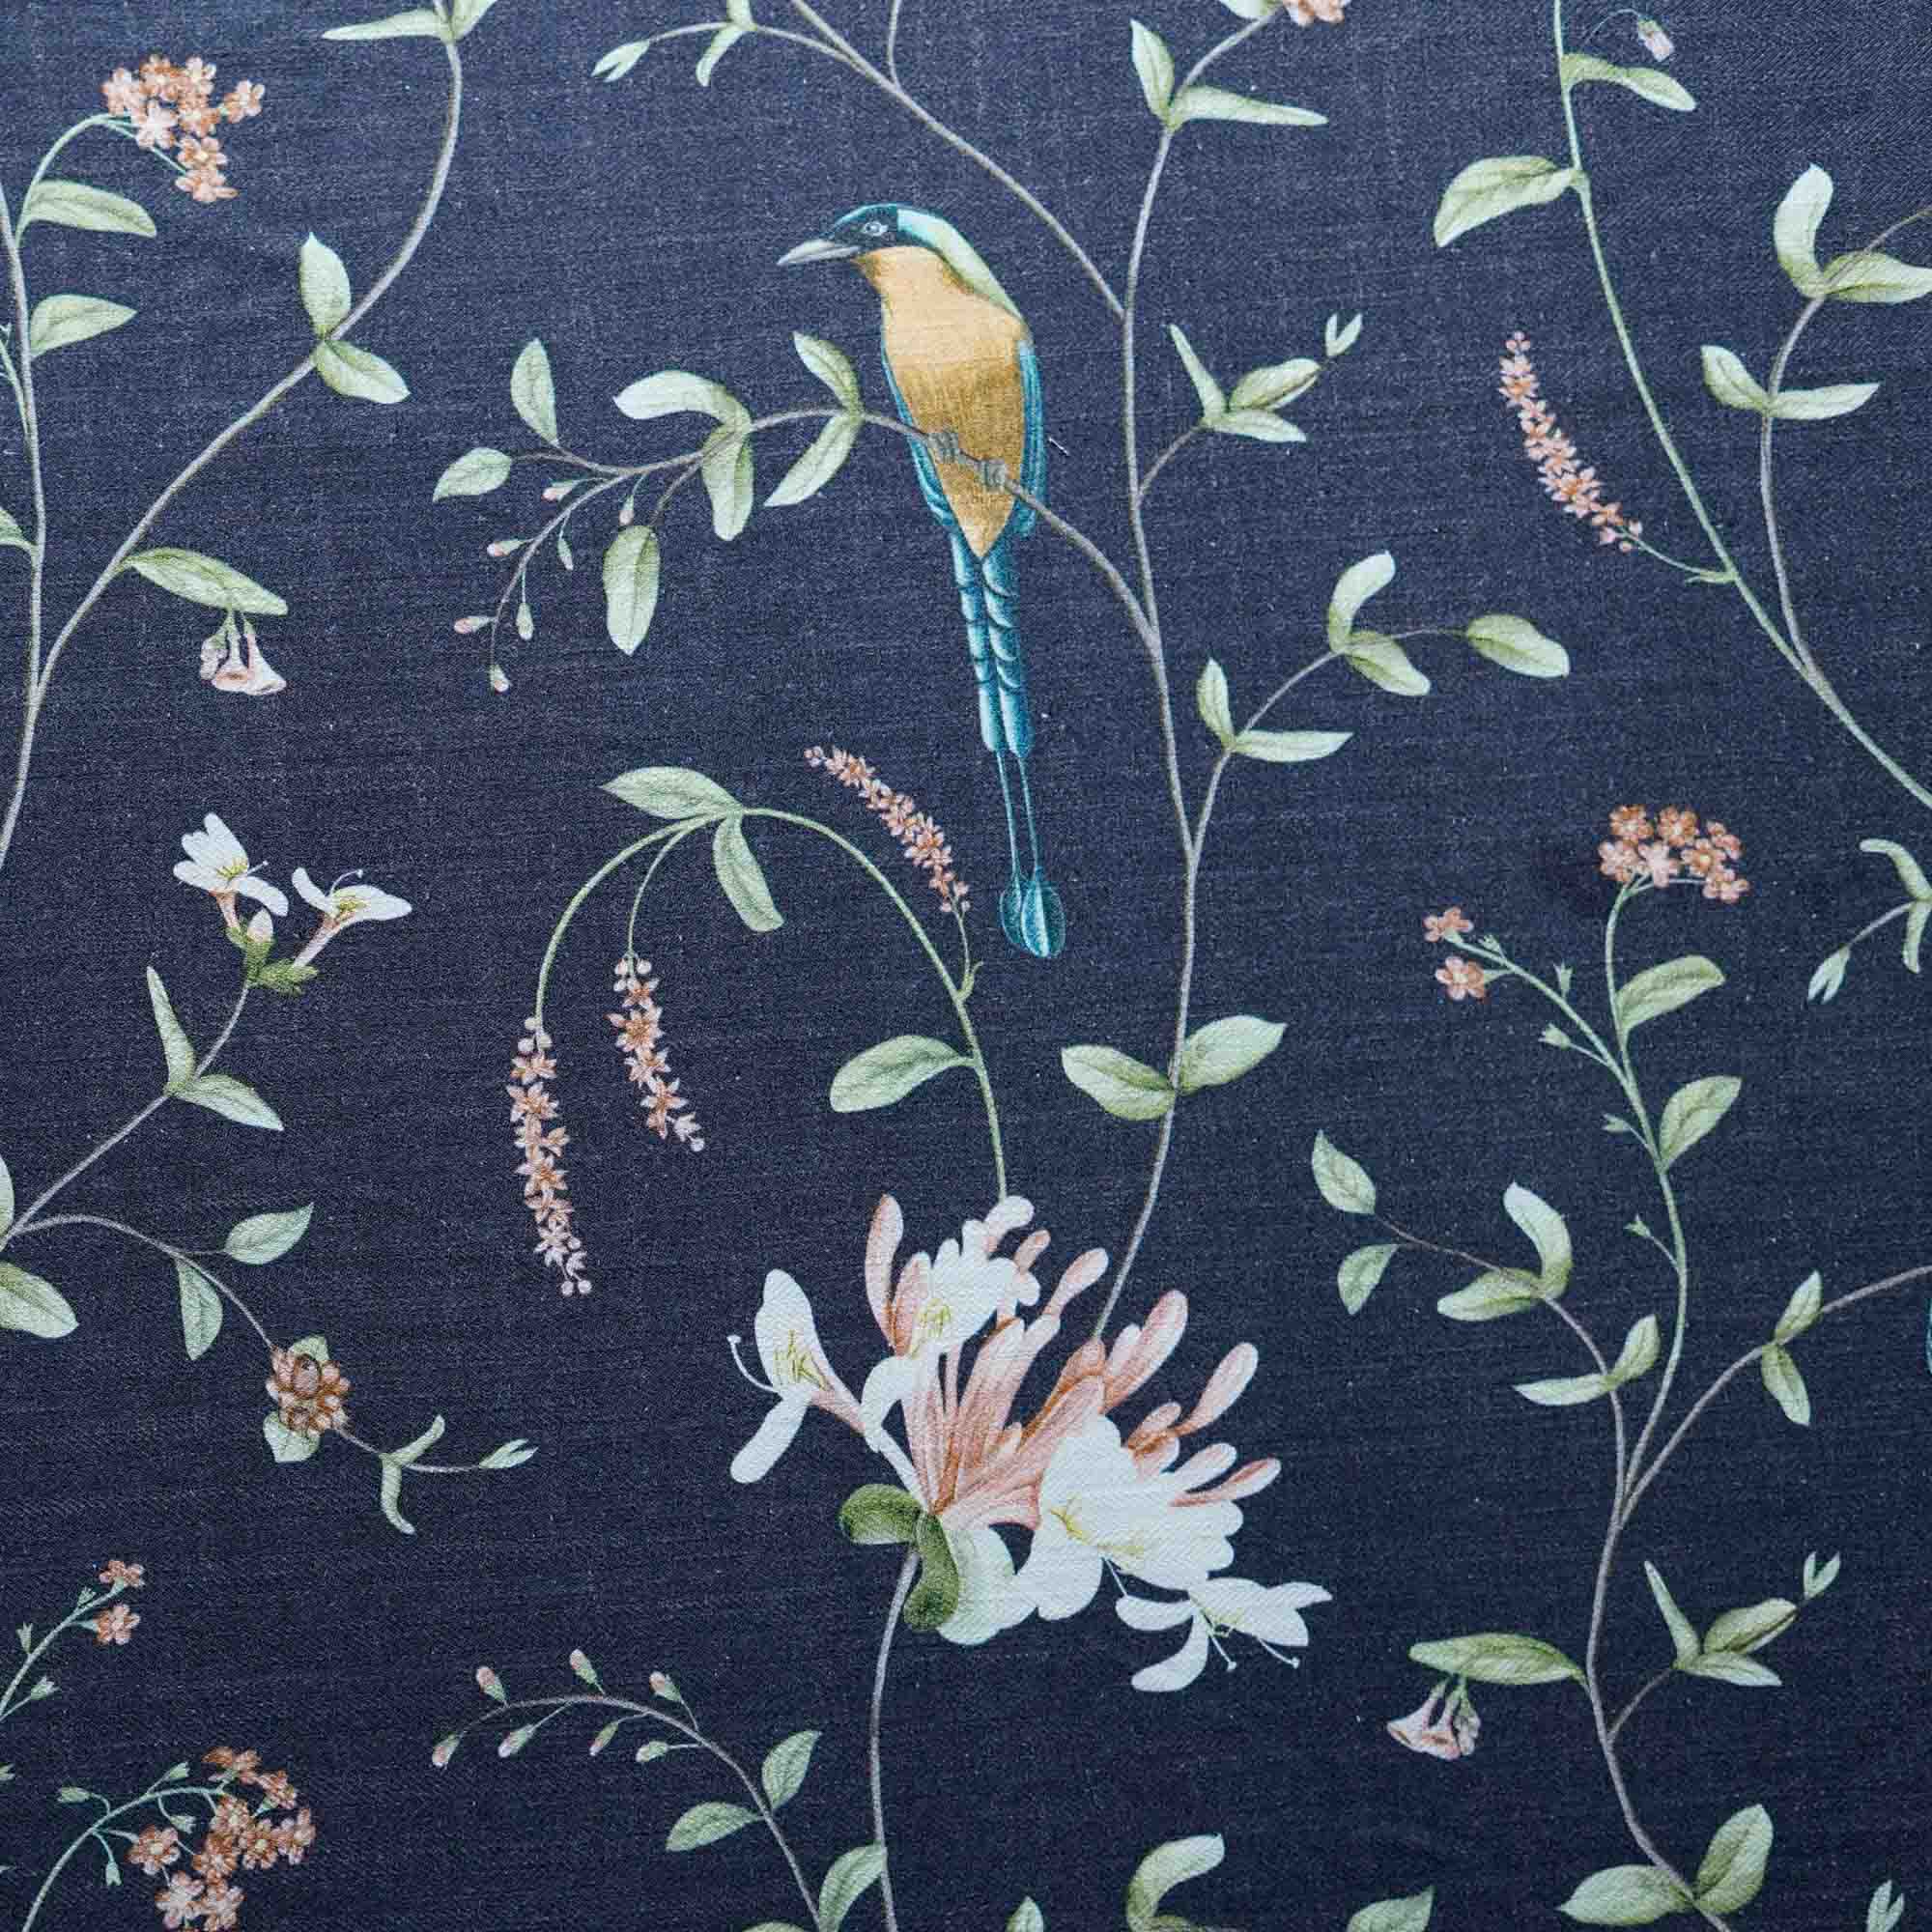 A Persian Garden Moonlit Cotton Linen Blend Fabric (Horizontal Repeat)